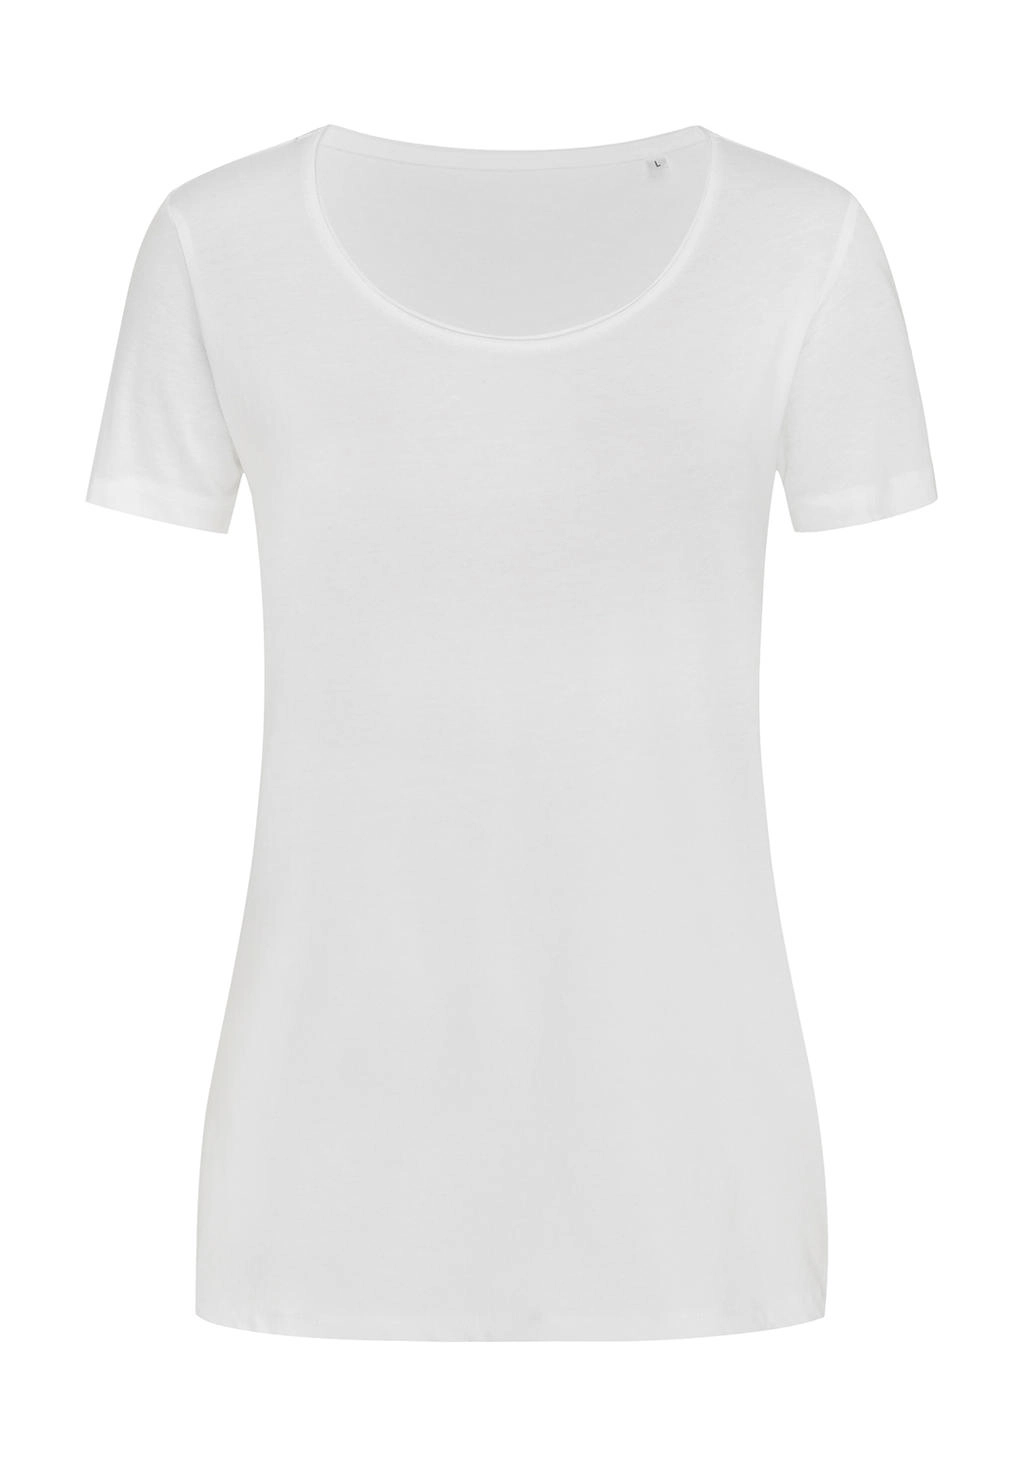 Finest Cotton-T Women zum Besticken und Bedrucken in der Farbe White mit Ihren Logo, Schriftzug oder Motiv.